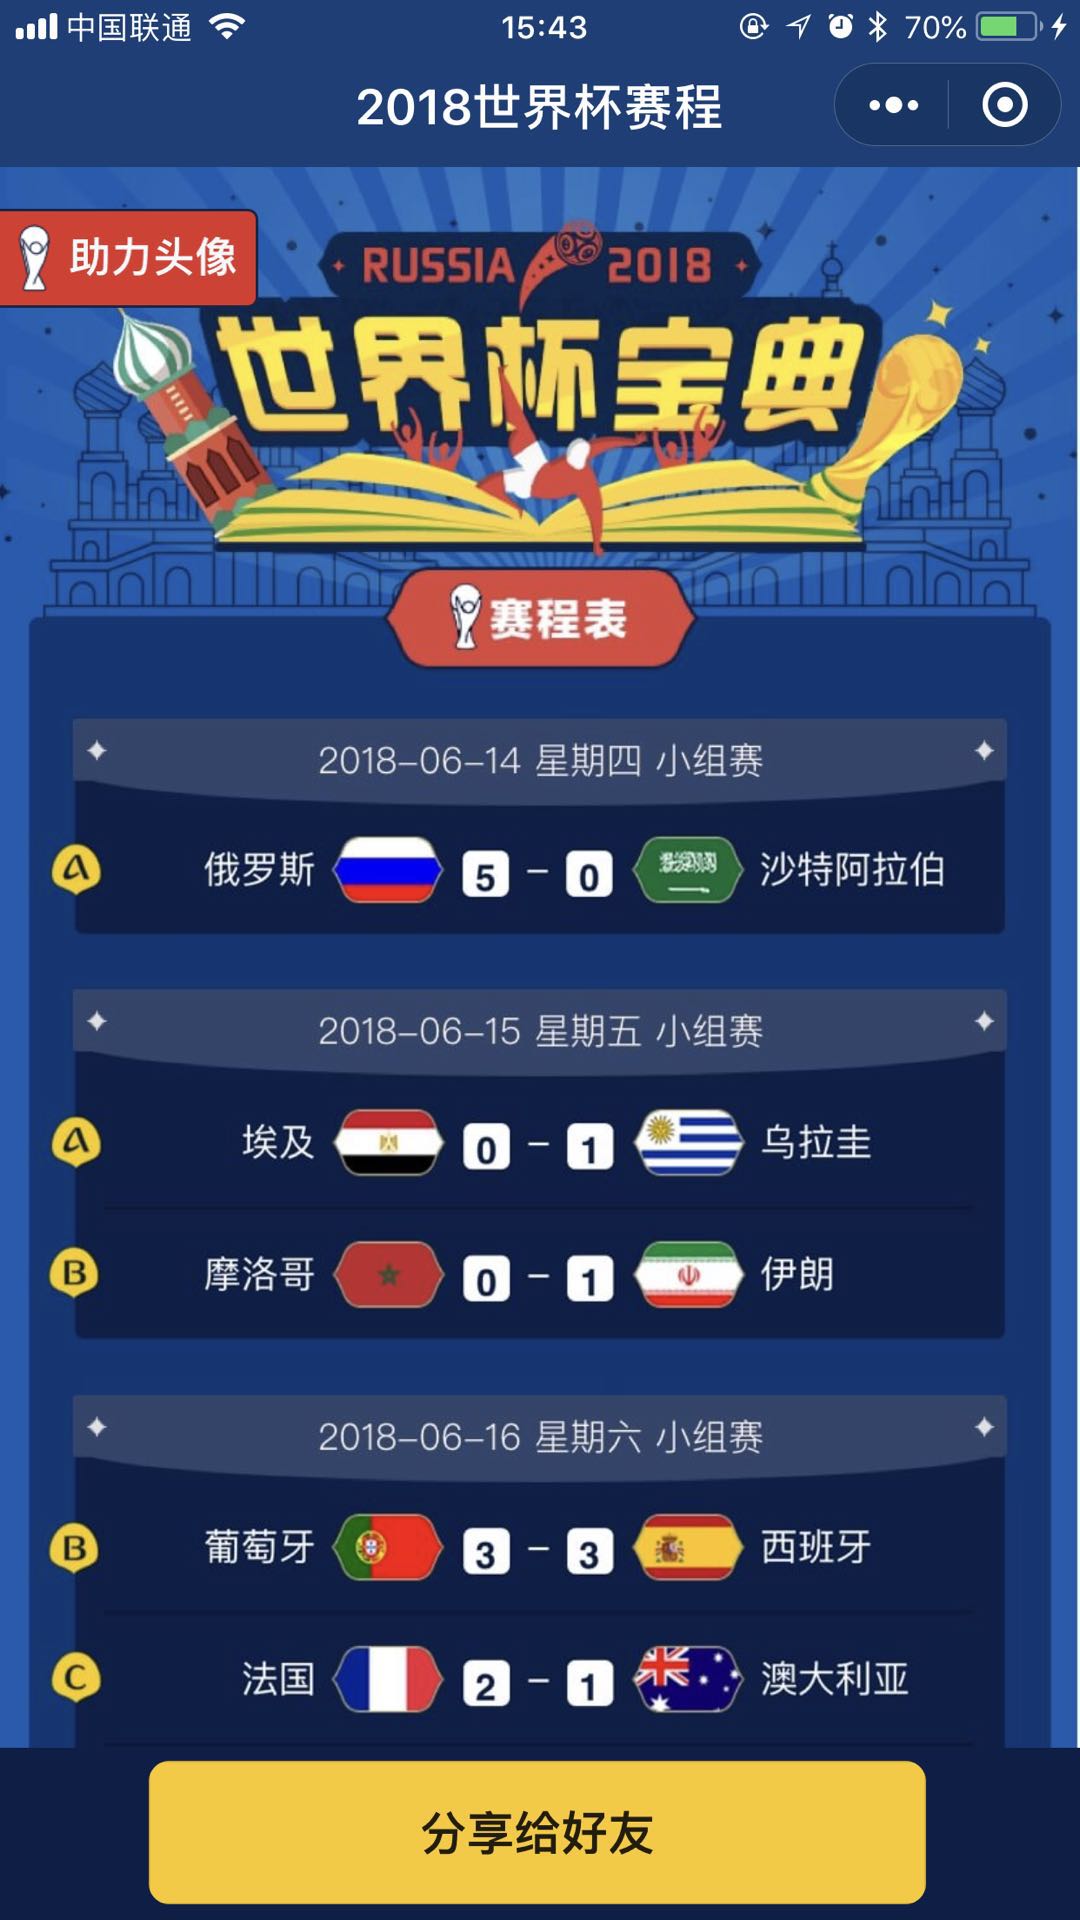 2018年世界杯赛程